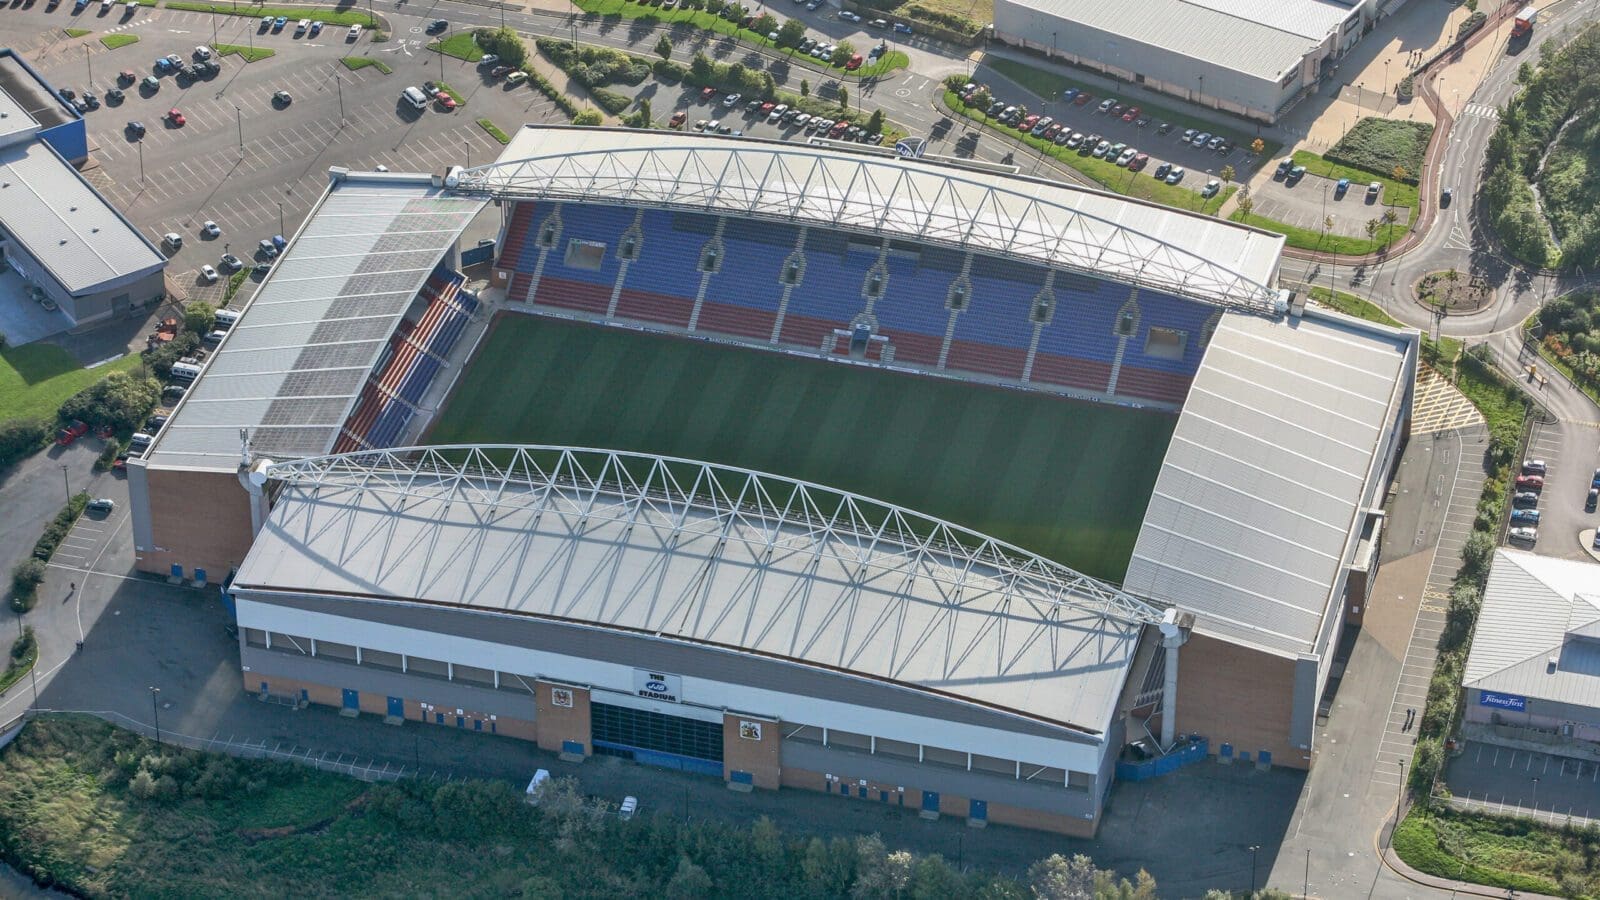 Wigan DW stadium scaled